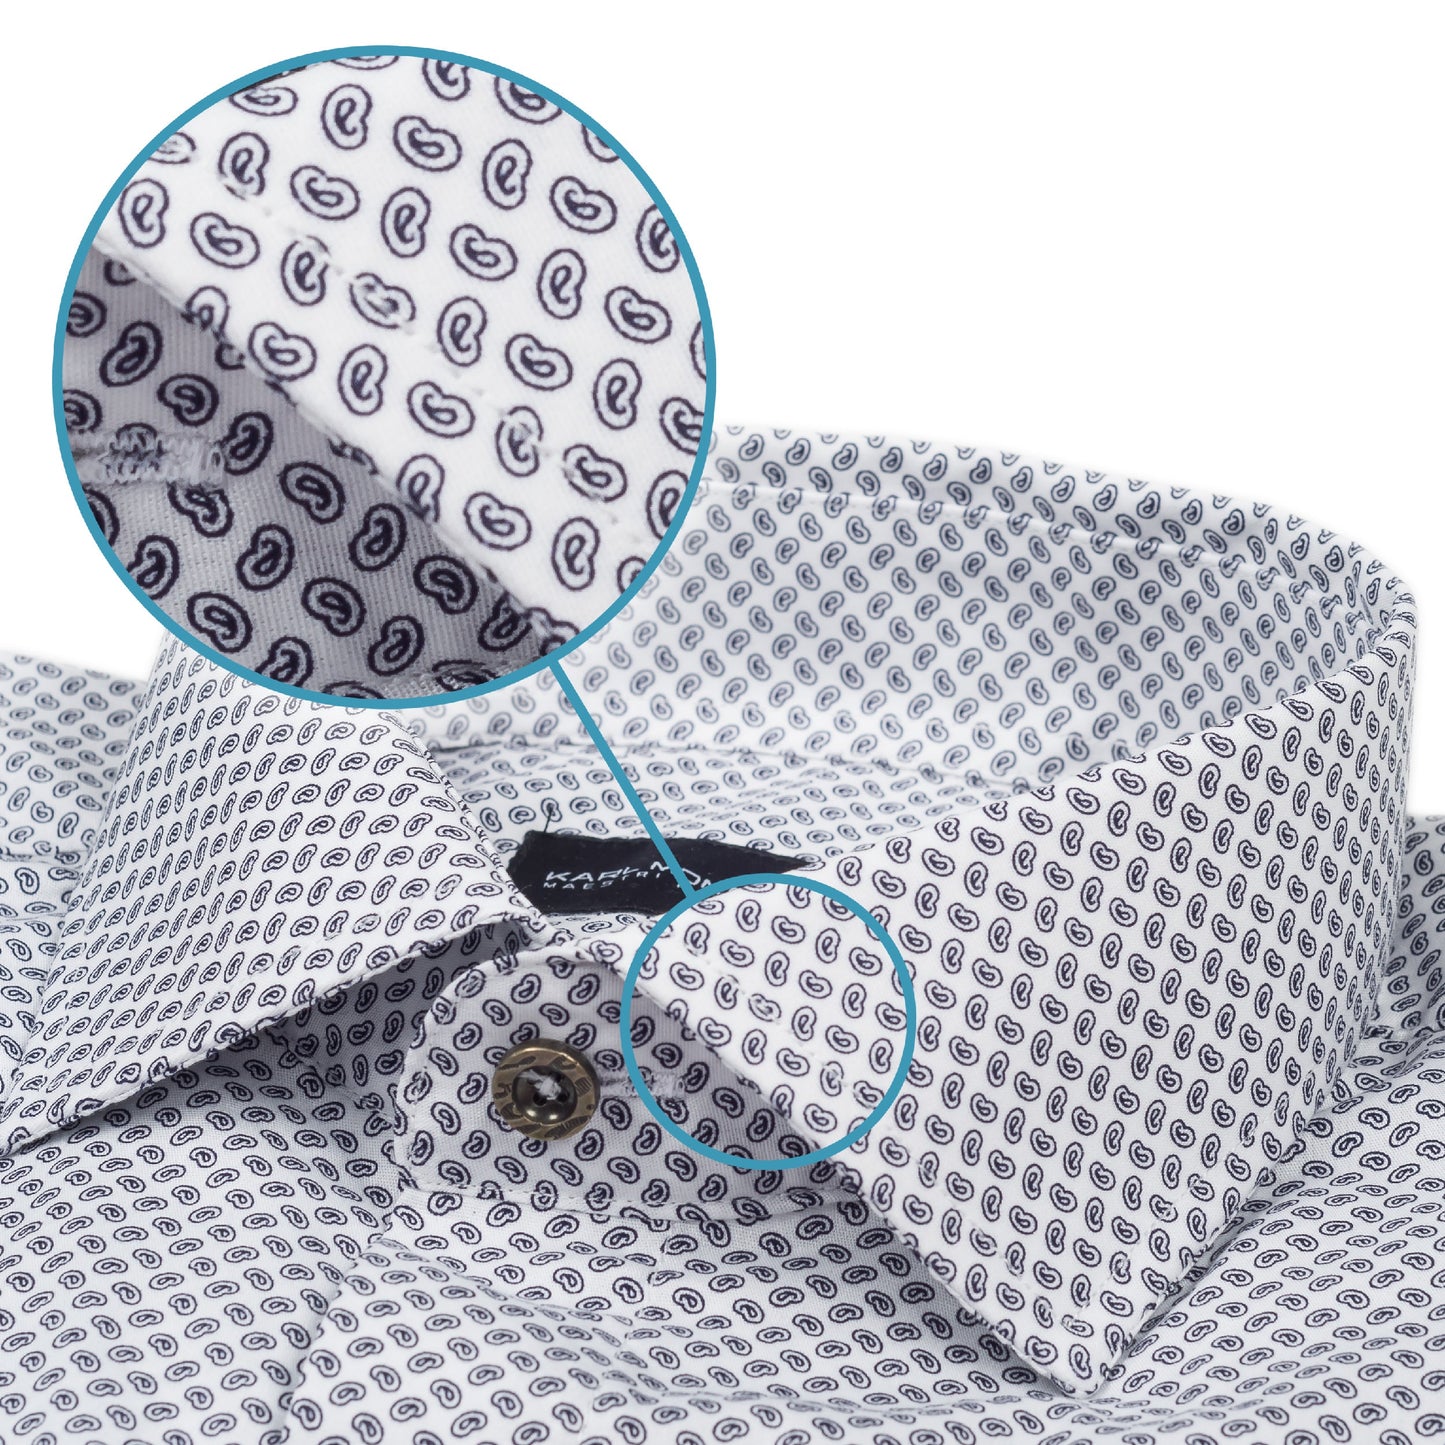 Karl Mommoo - Italienisches Herren-Hemd, weiß mit dunkelgrauem Paisley-Muster, Baumwolle mit Elasthan, Modern Fit. Detailansicht